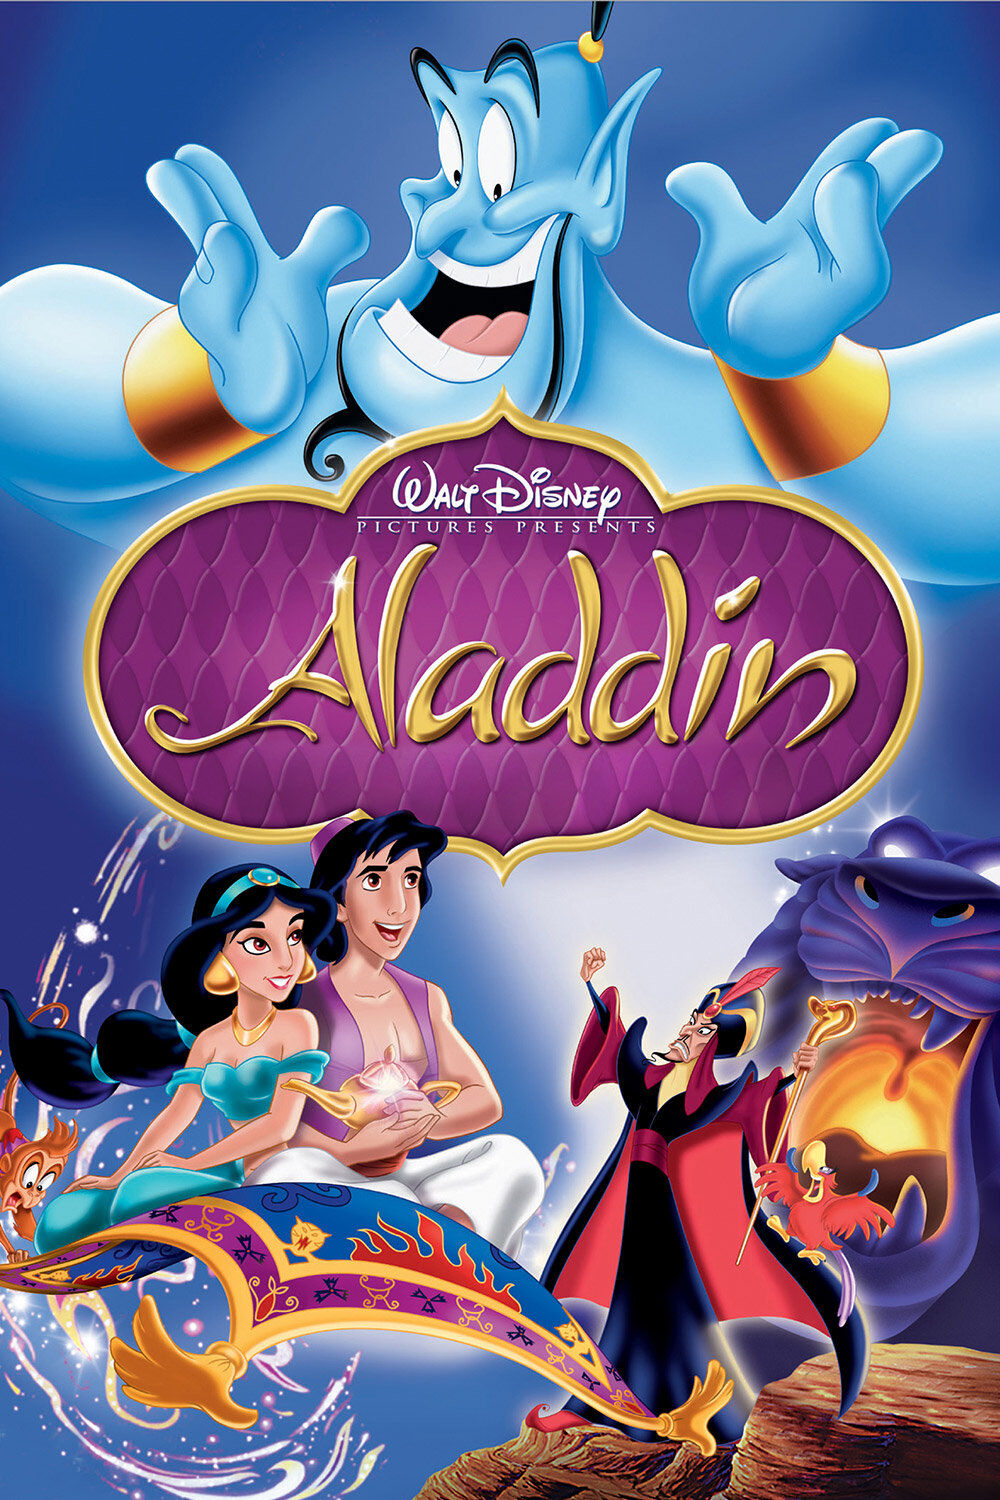 Aladdin Genie - IATSE